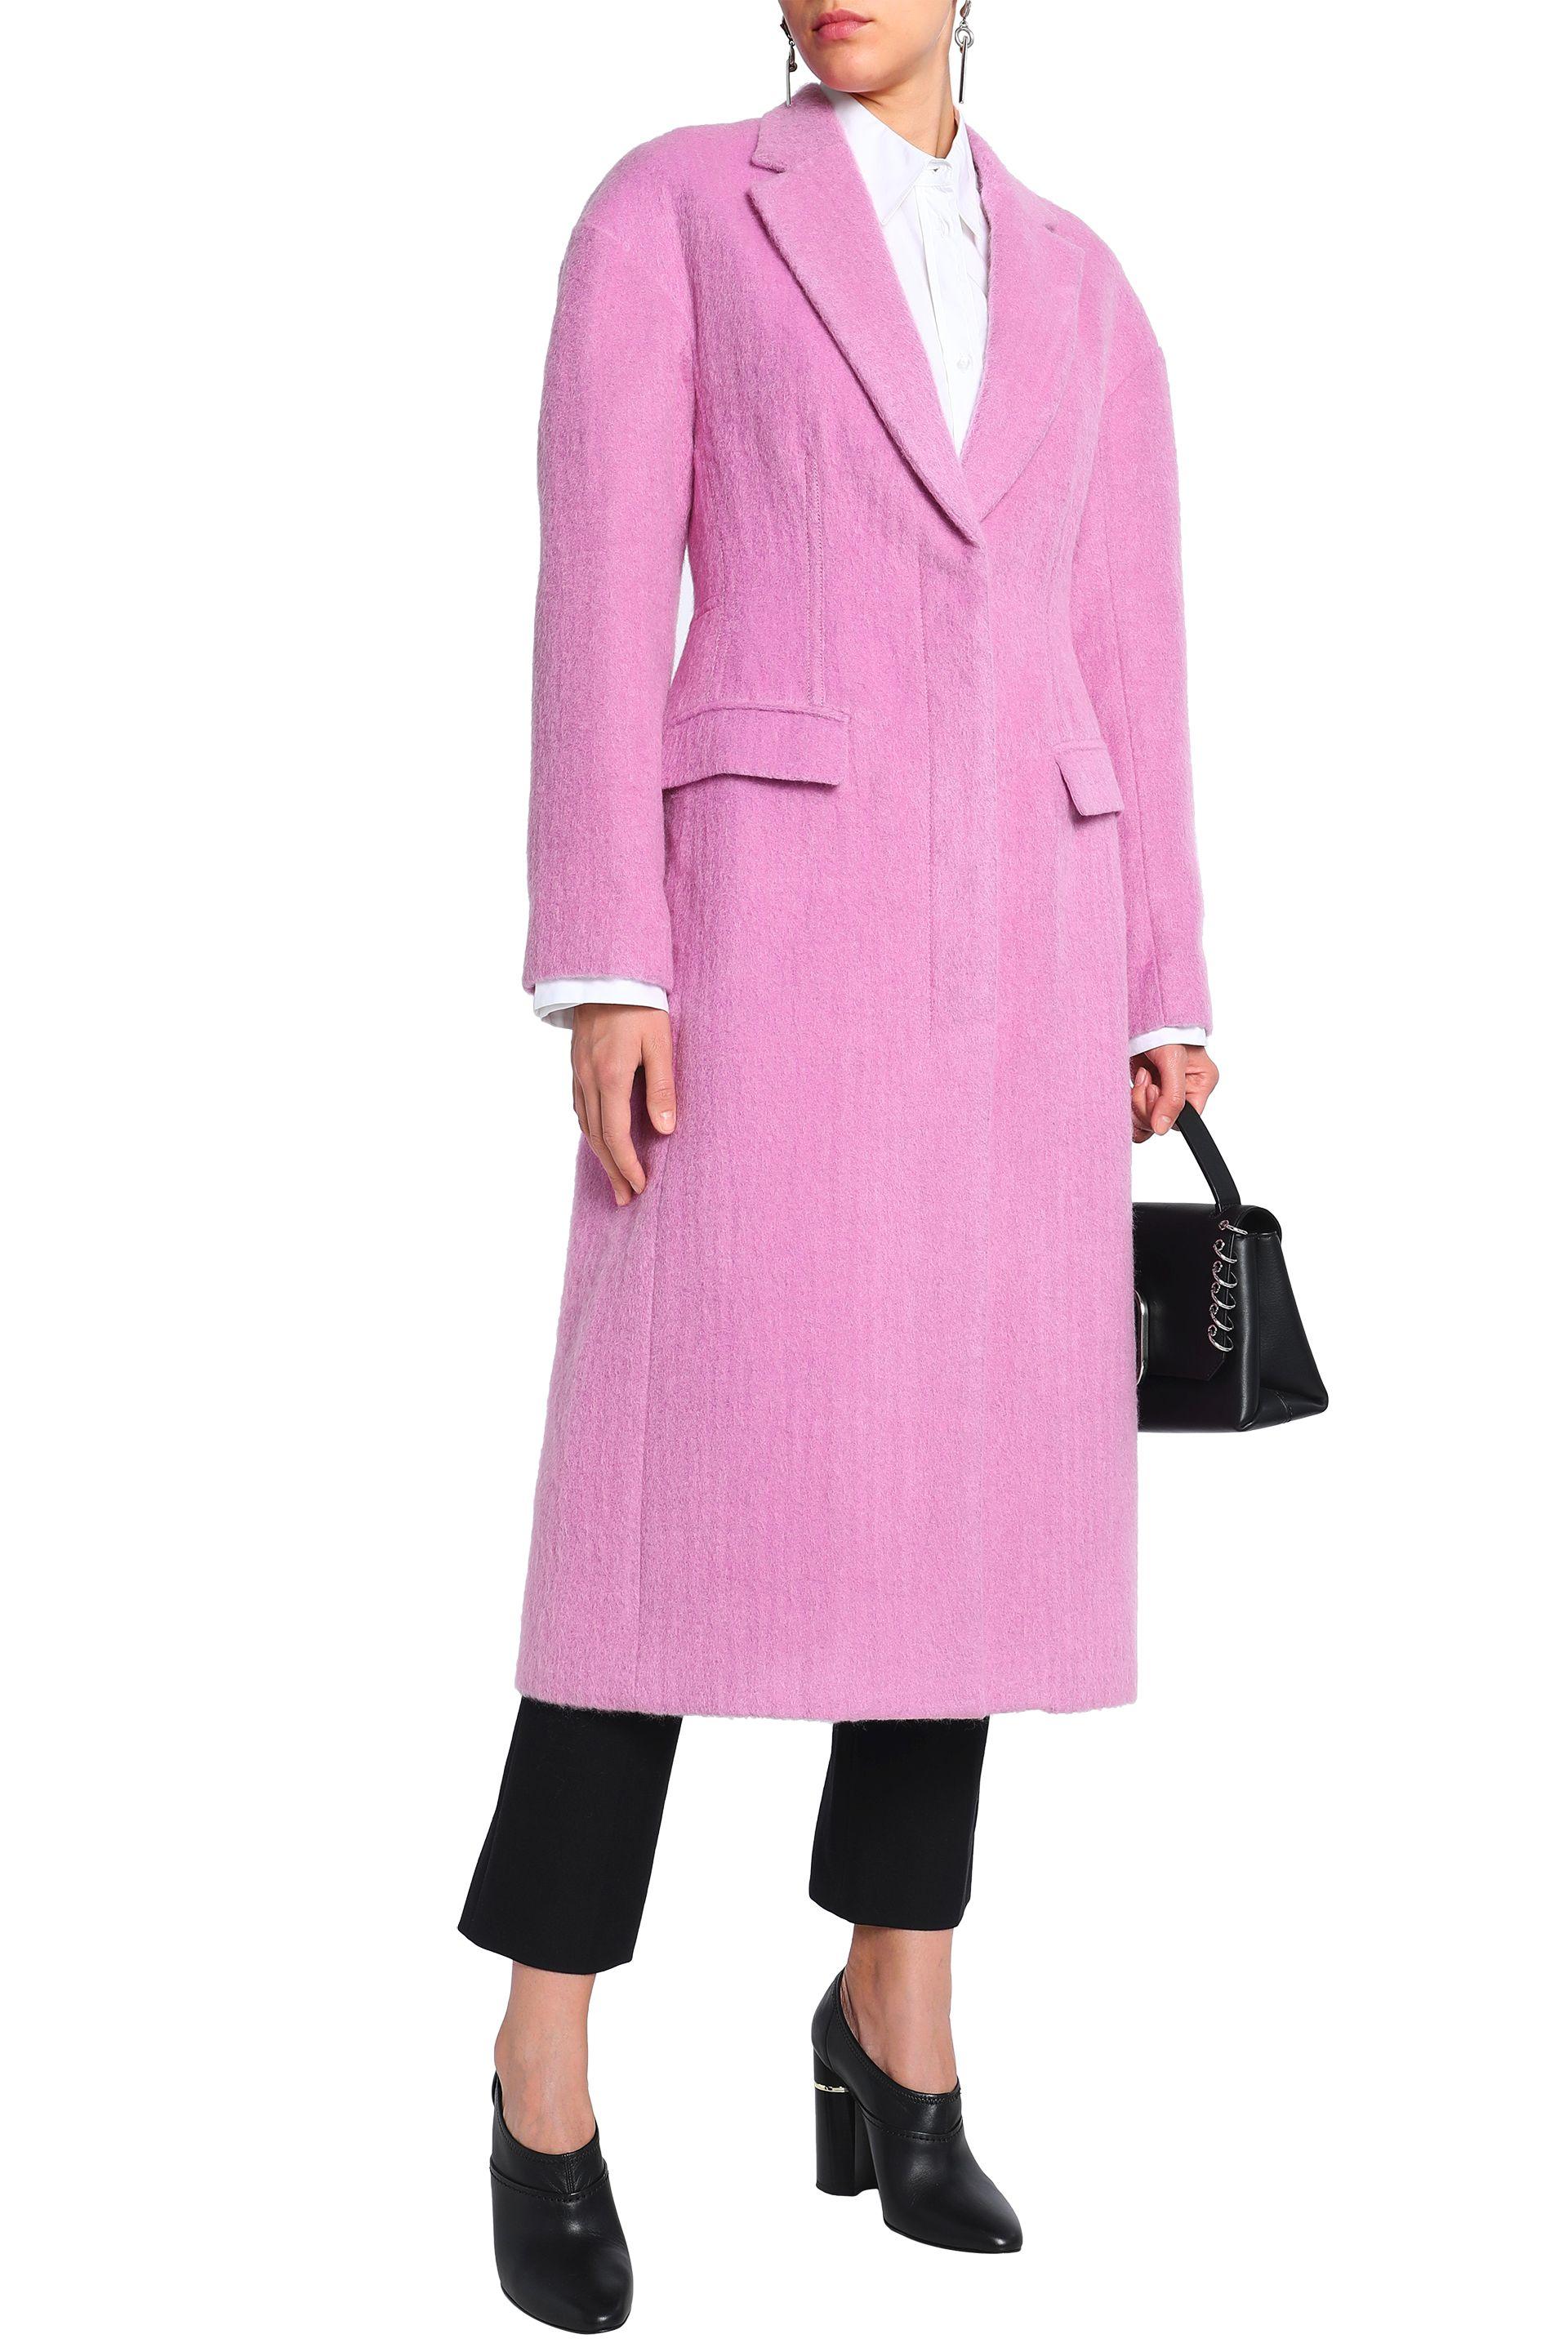 3.1 Phillip Lim Felt Coat in Pink | Lyst